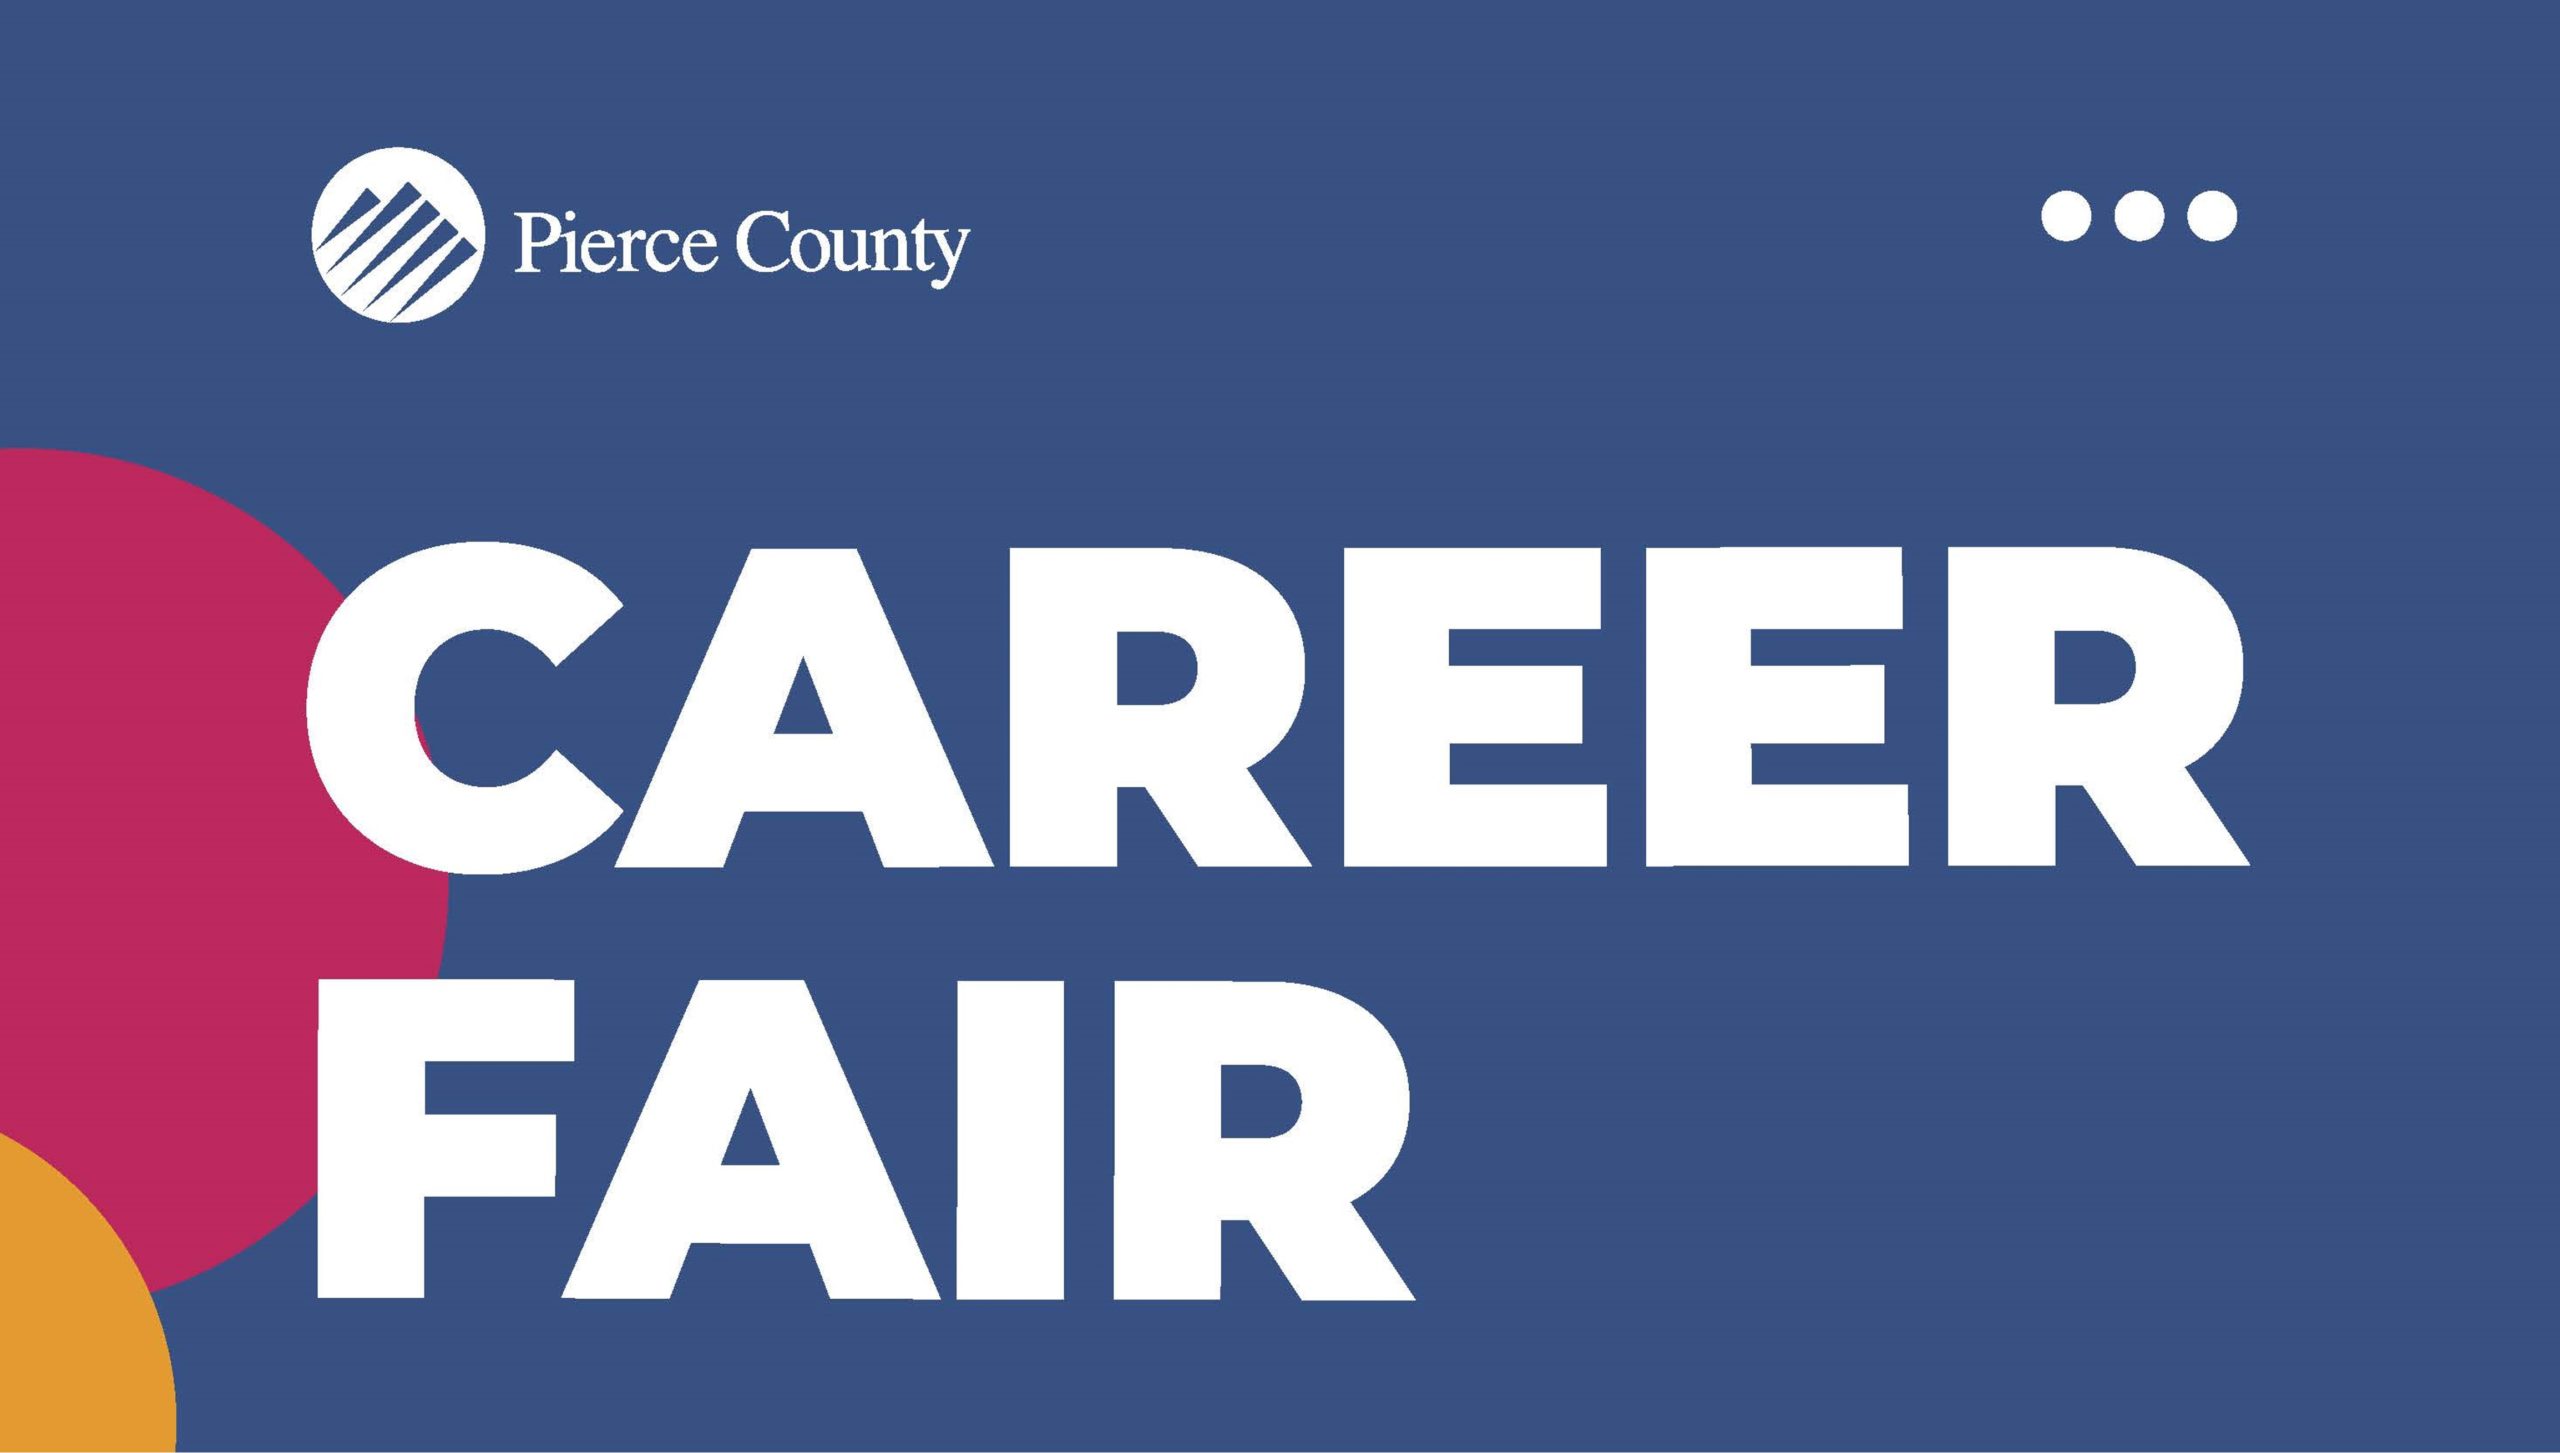 Pierce County Career Fair - April 14th 1